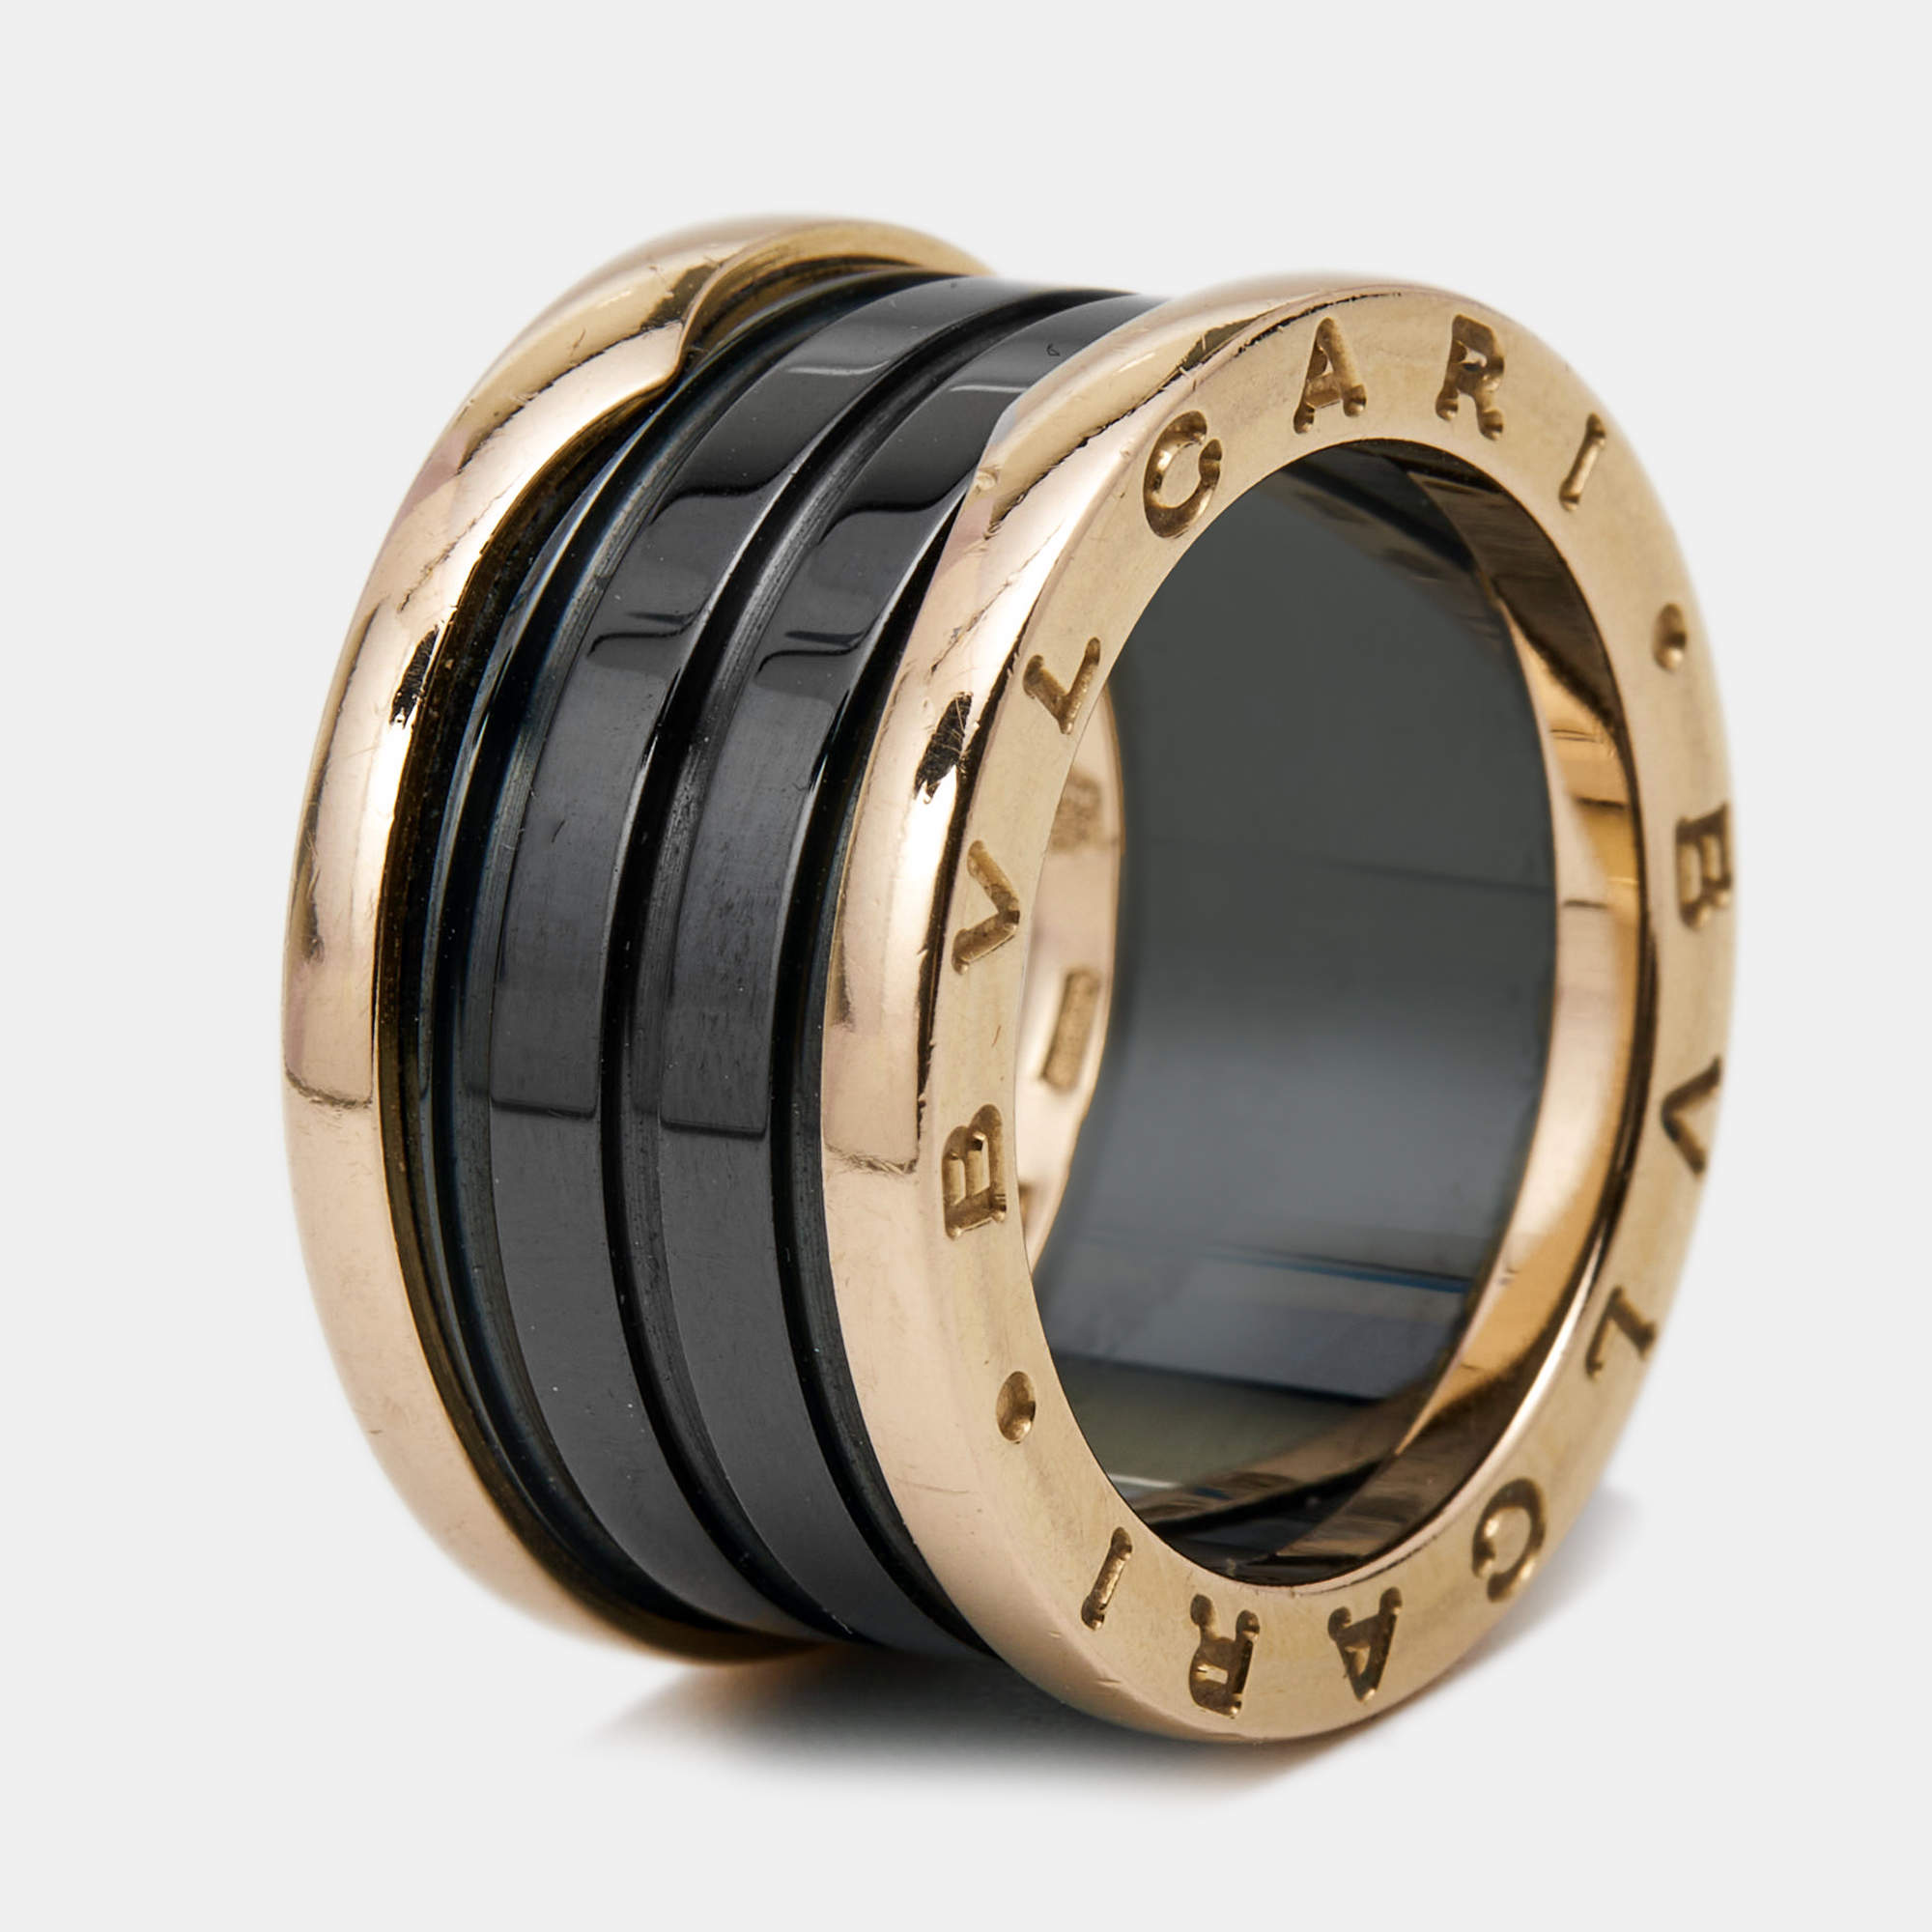 Bvlgari B.Zero1 4-Band Ceramic 18k Rose Gold Ring Size 54